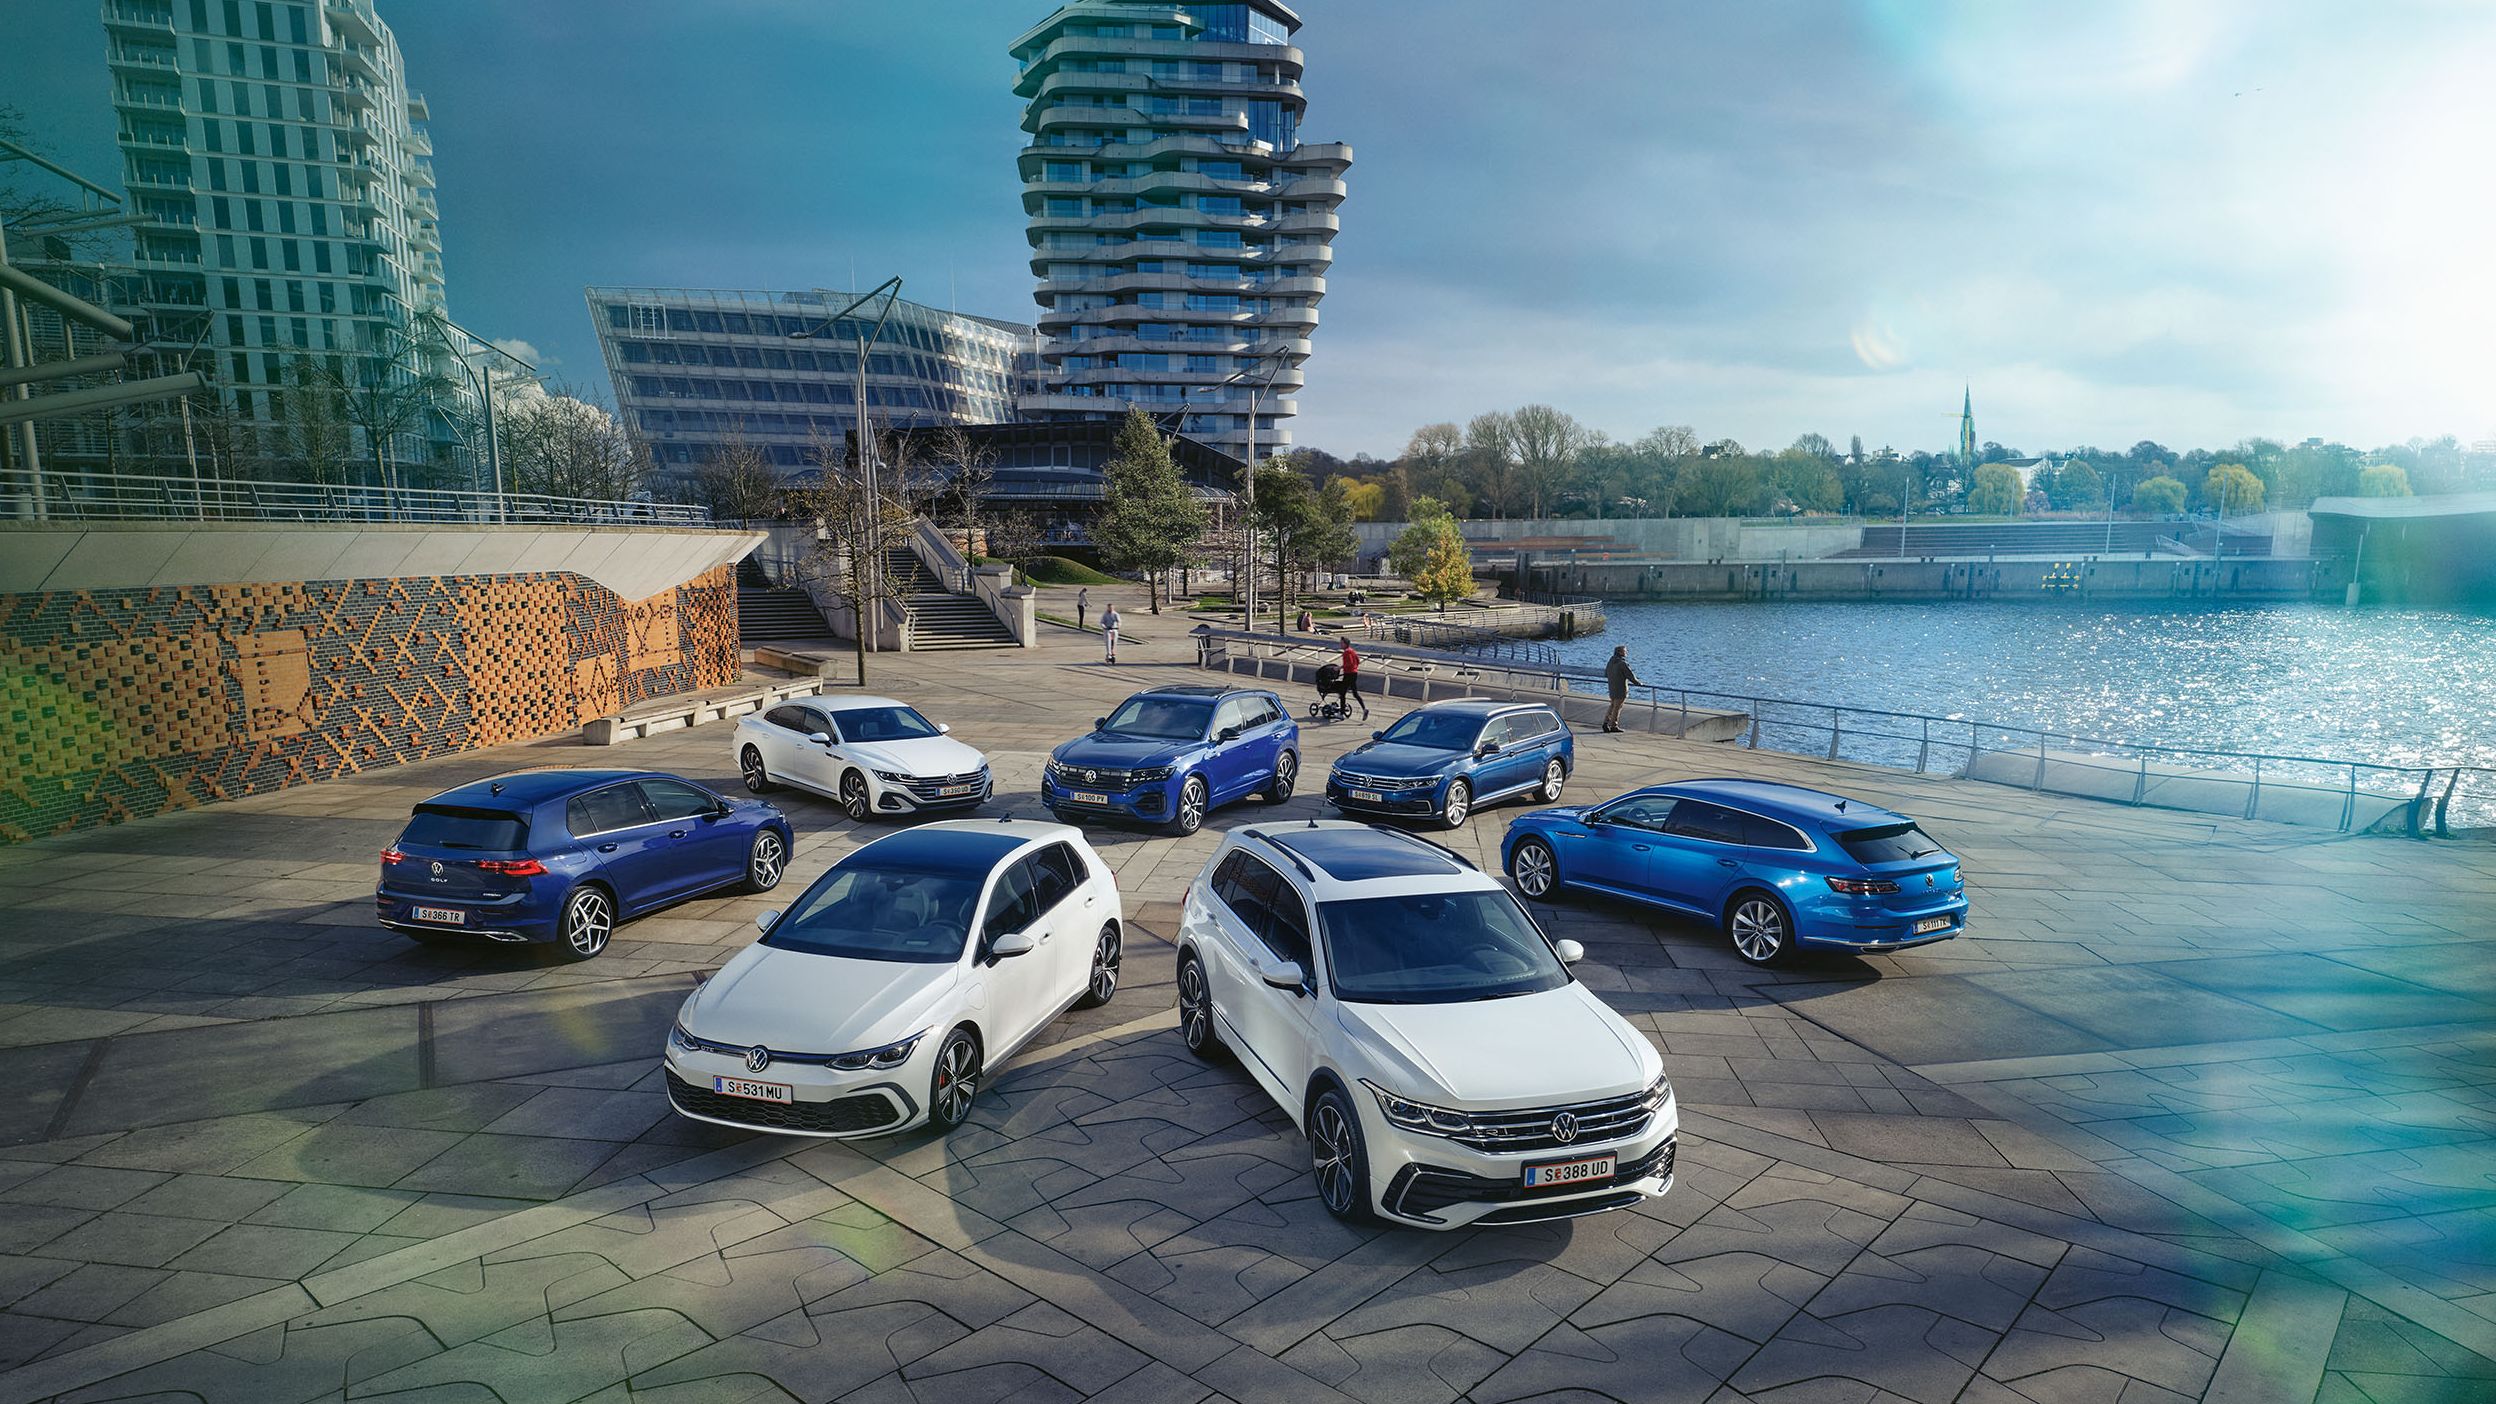 7 VW Hybridautos geparkt am Hafen